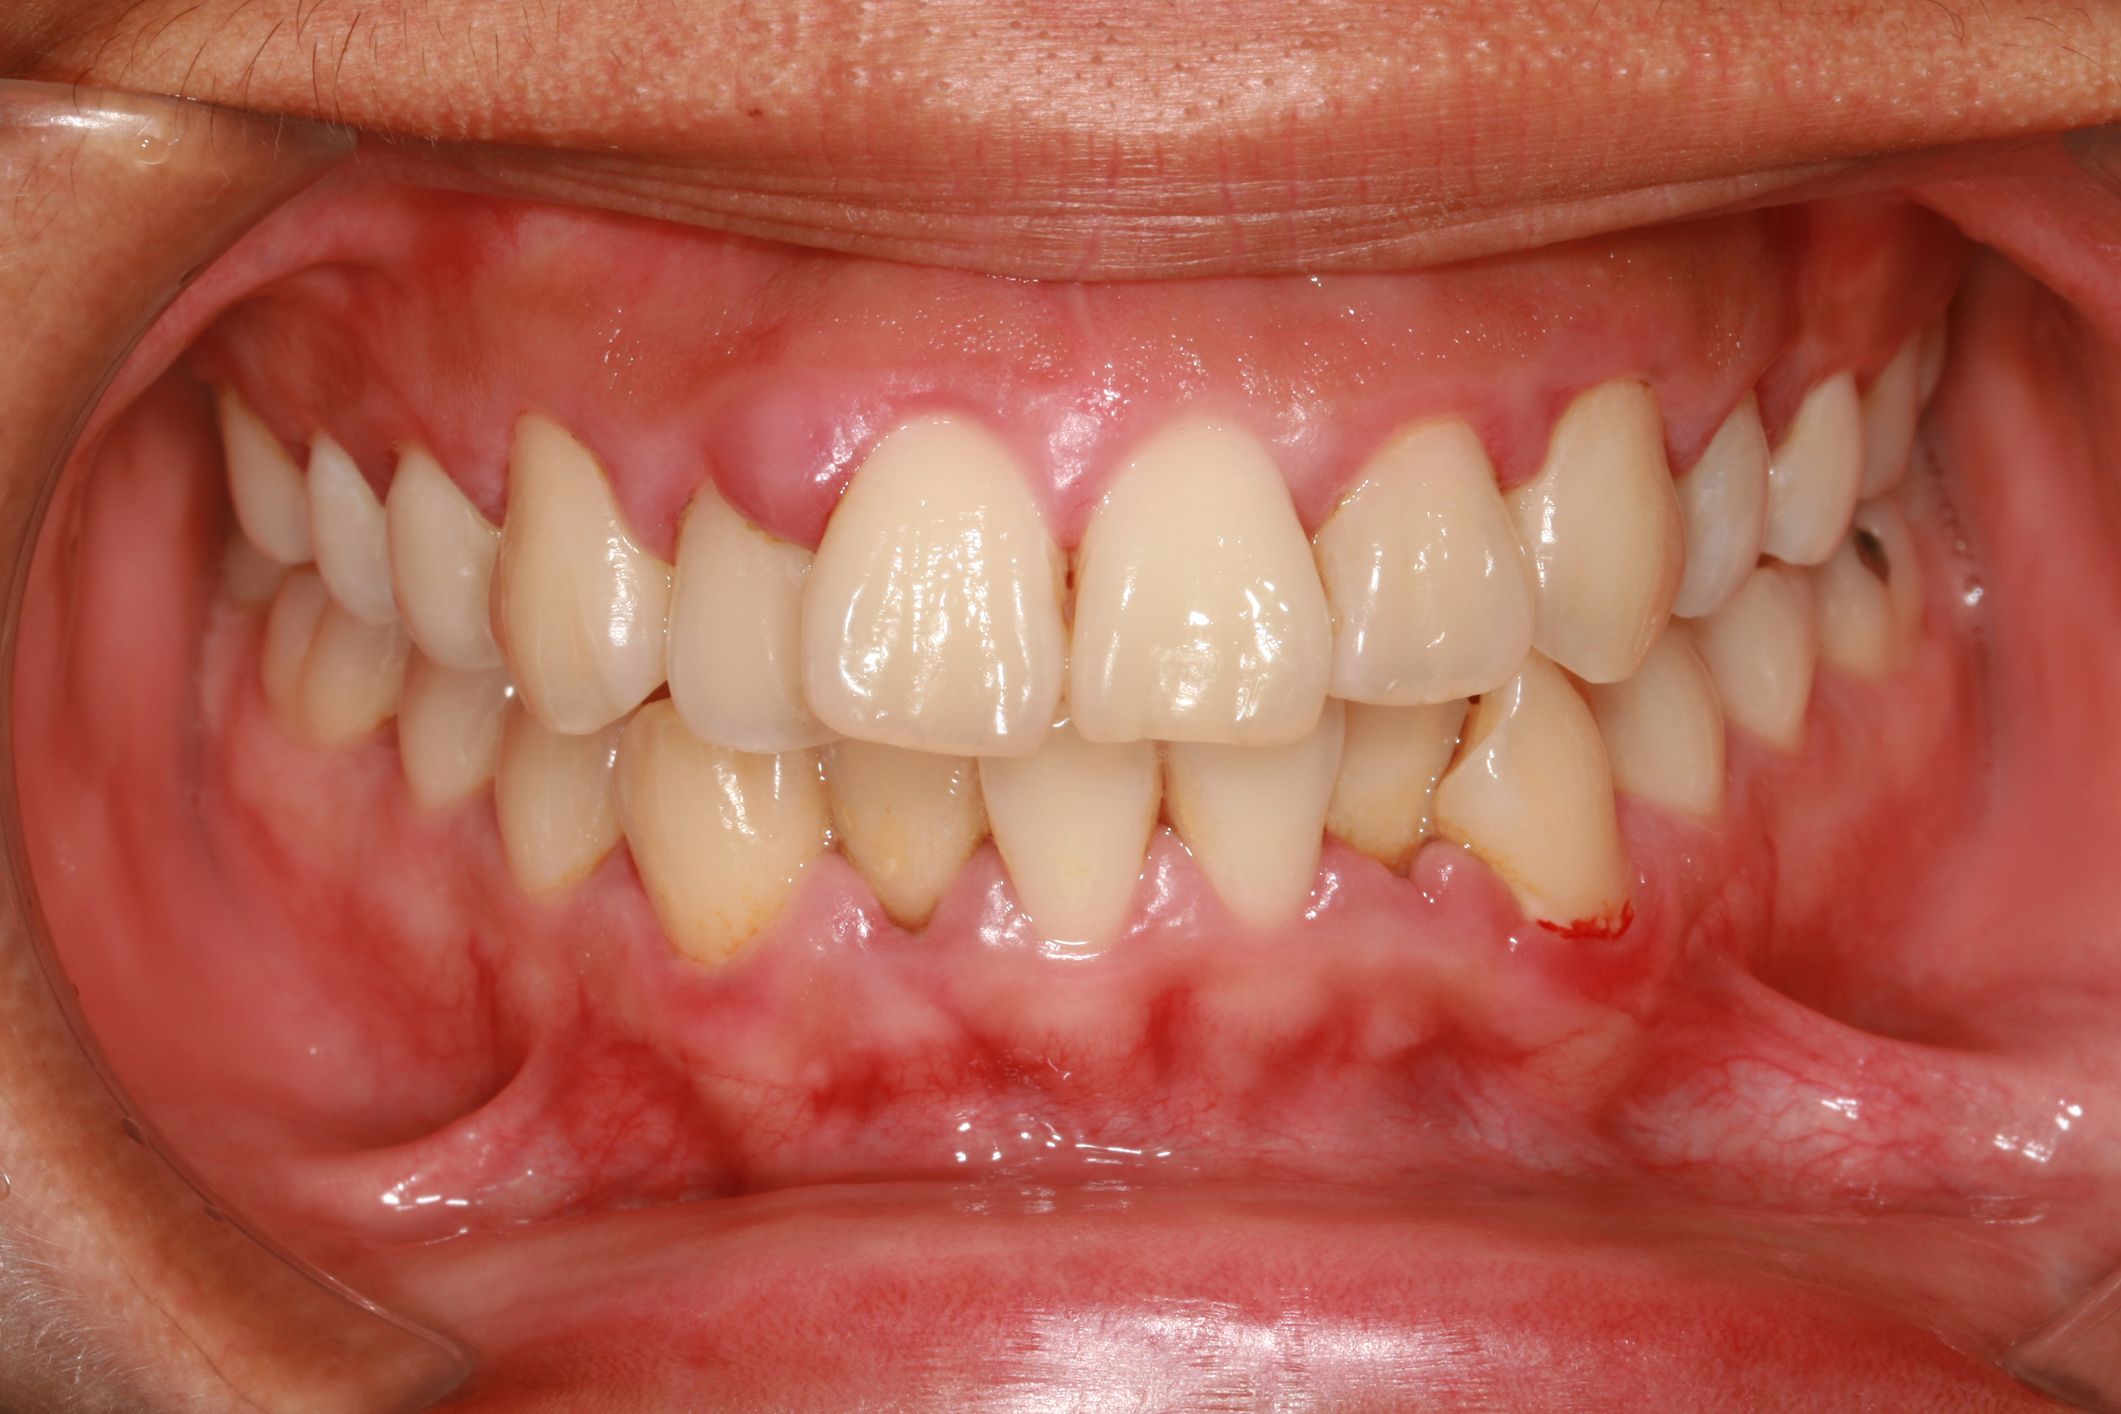 Periodontal disease showing the gum disease